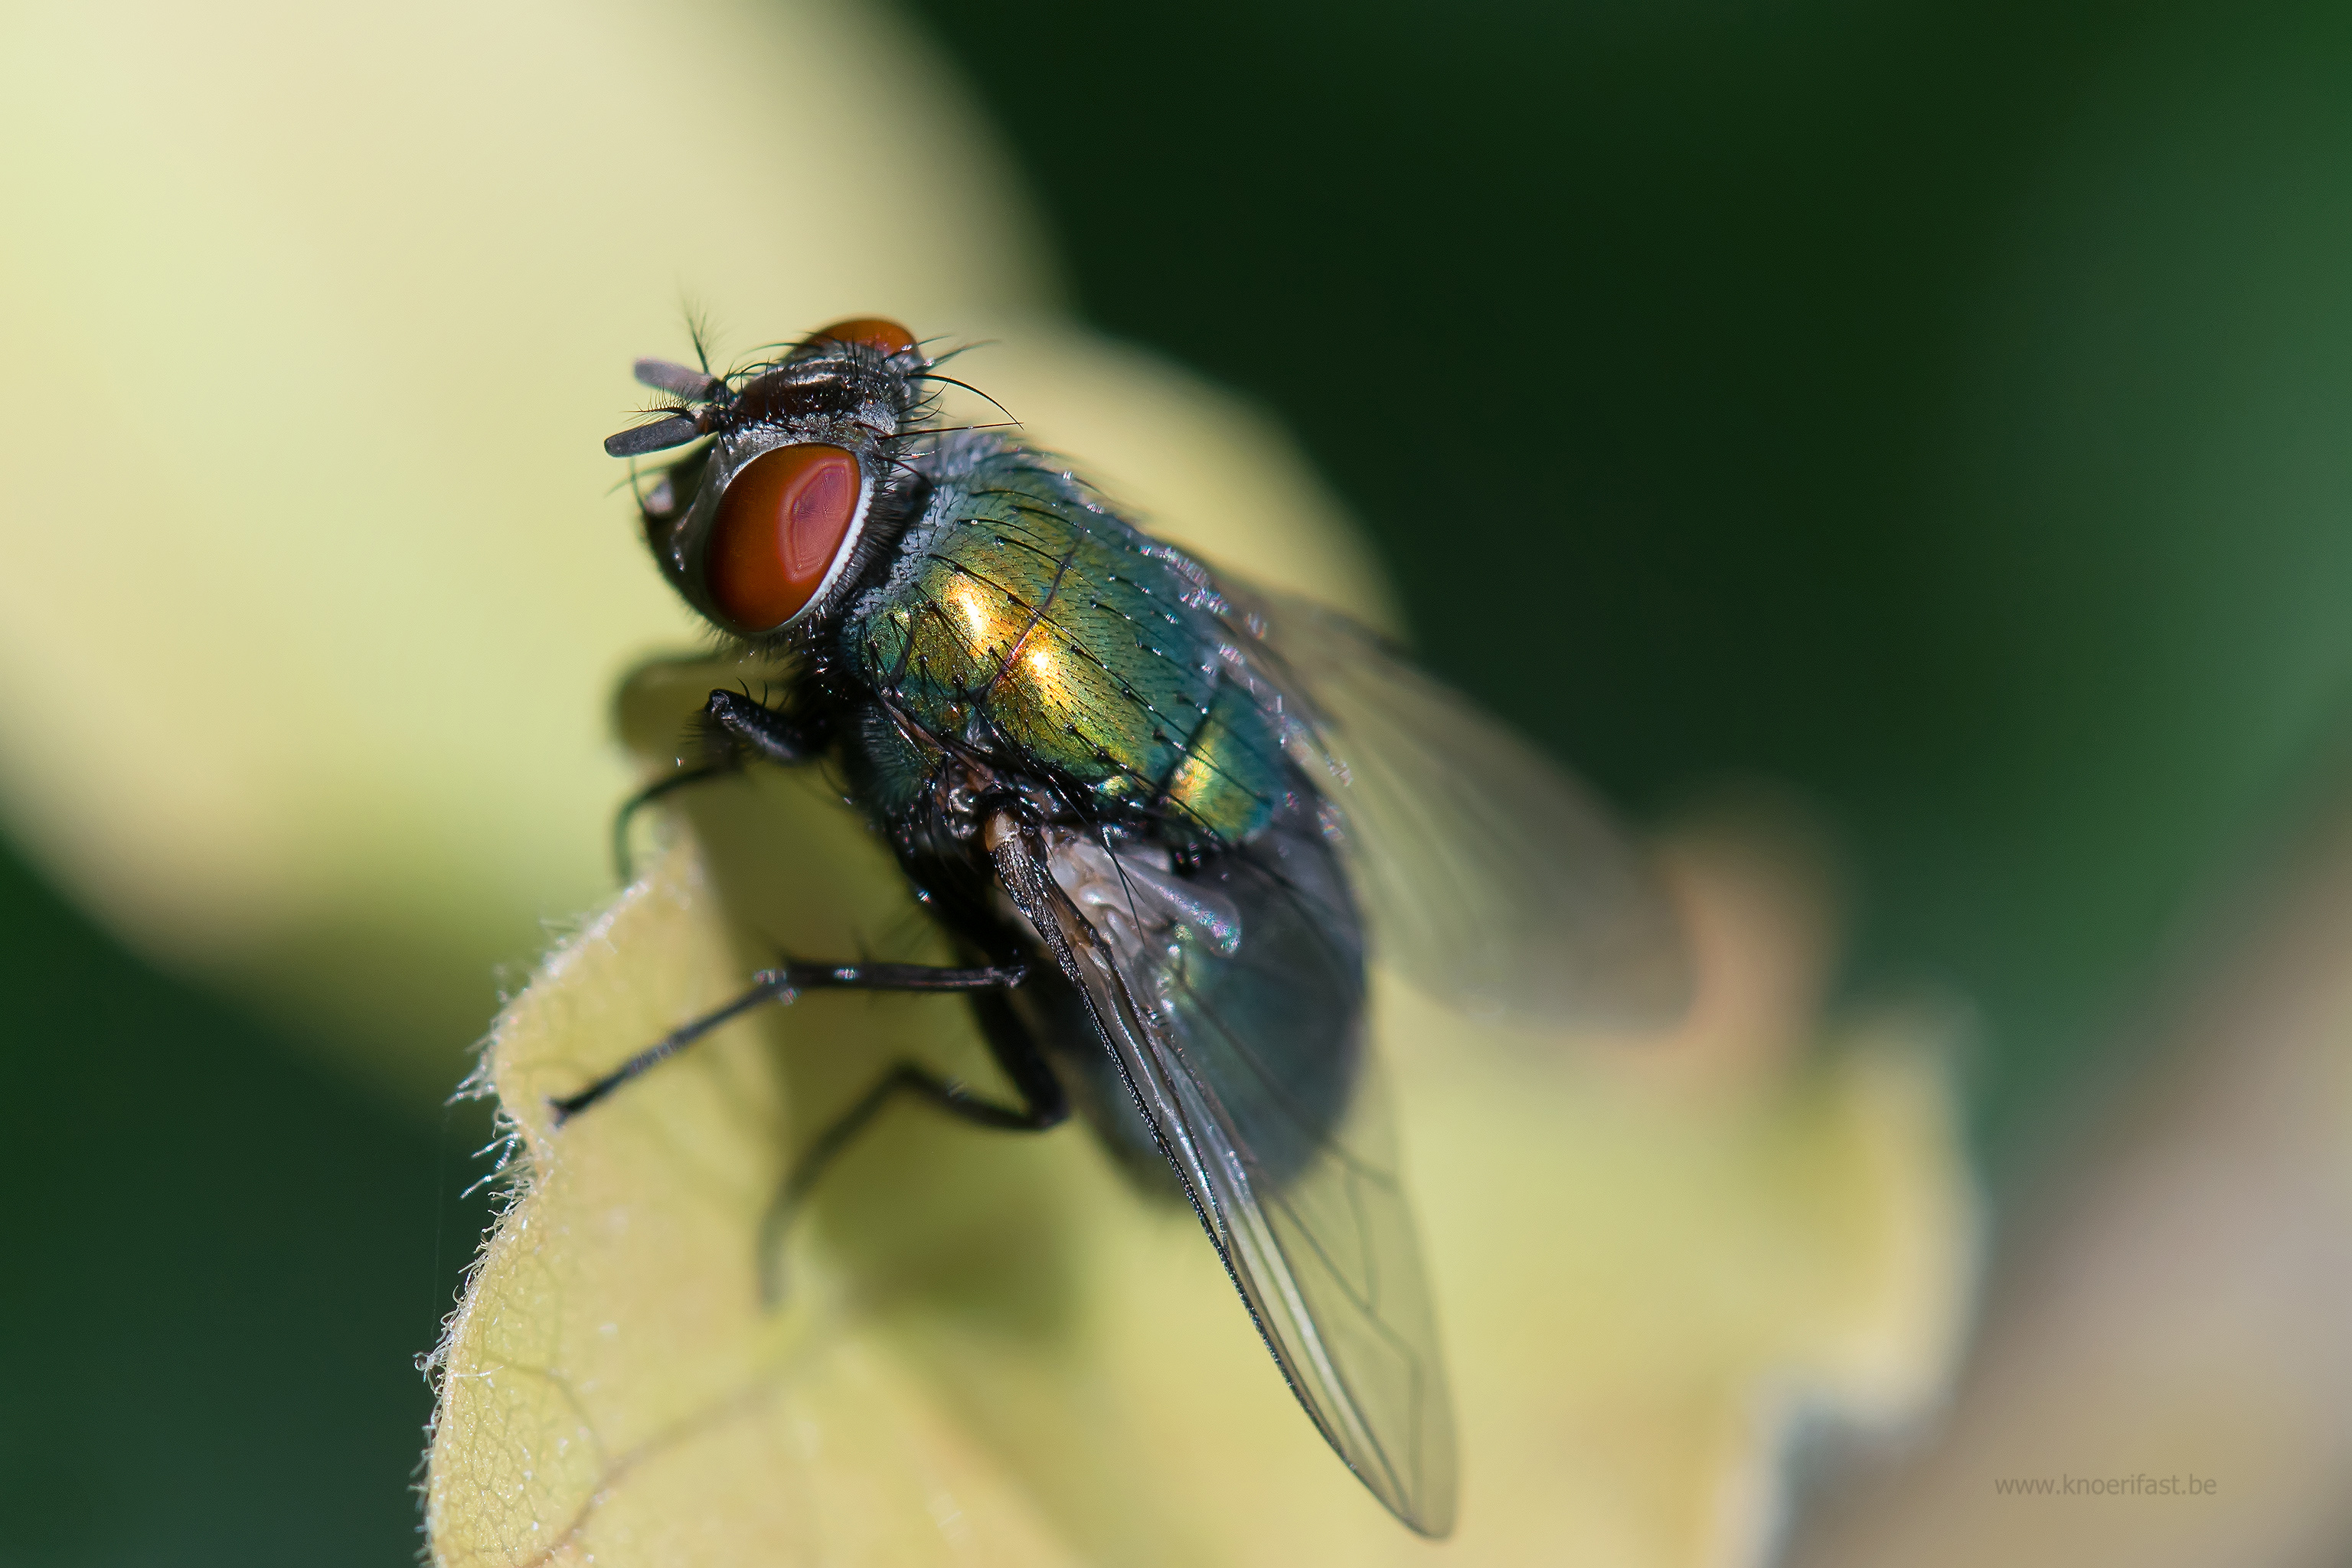 Common green bottle fly ...